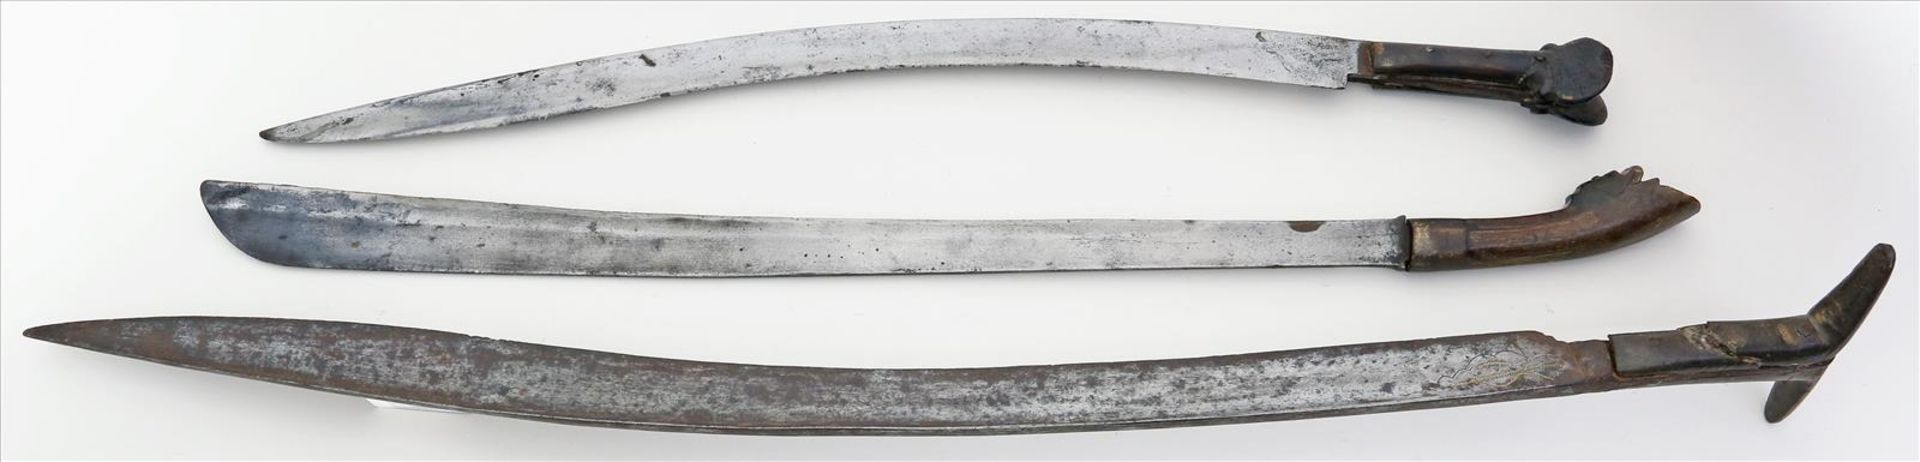 3 Schwerter aus Indonesien.Pedang und Yatagan. Eisenklingen. Geschnitzte Holzgriffe (besch.).